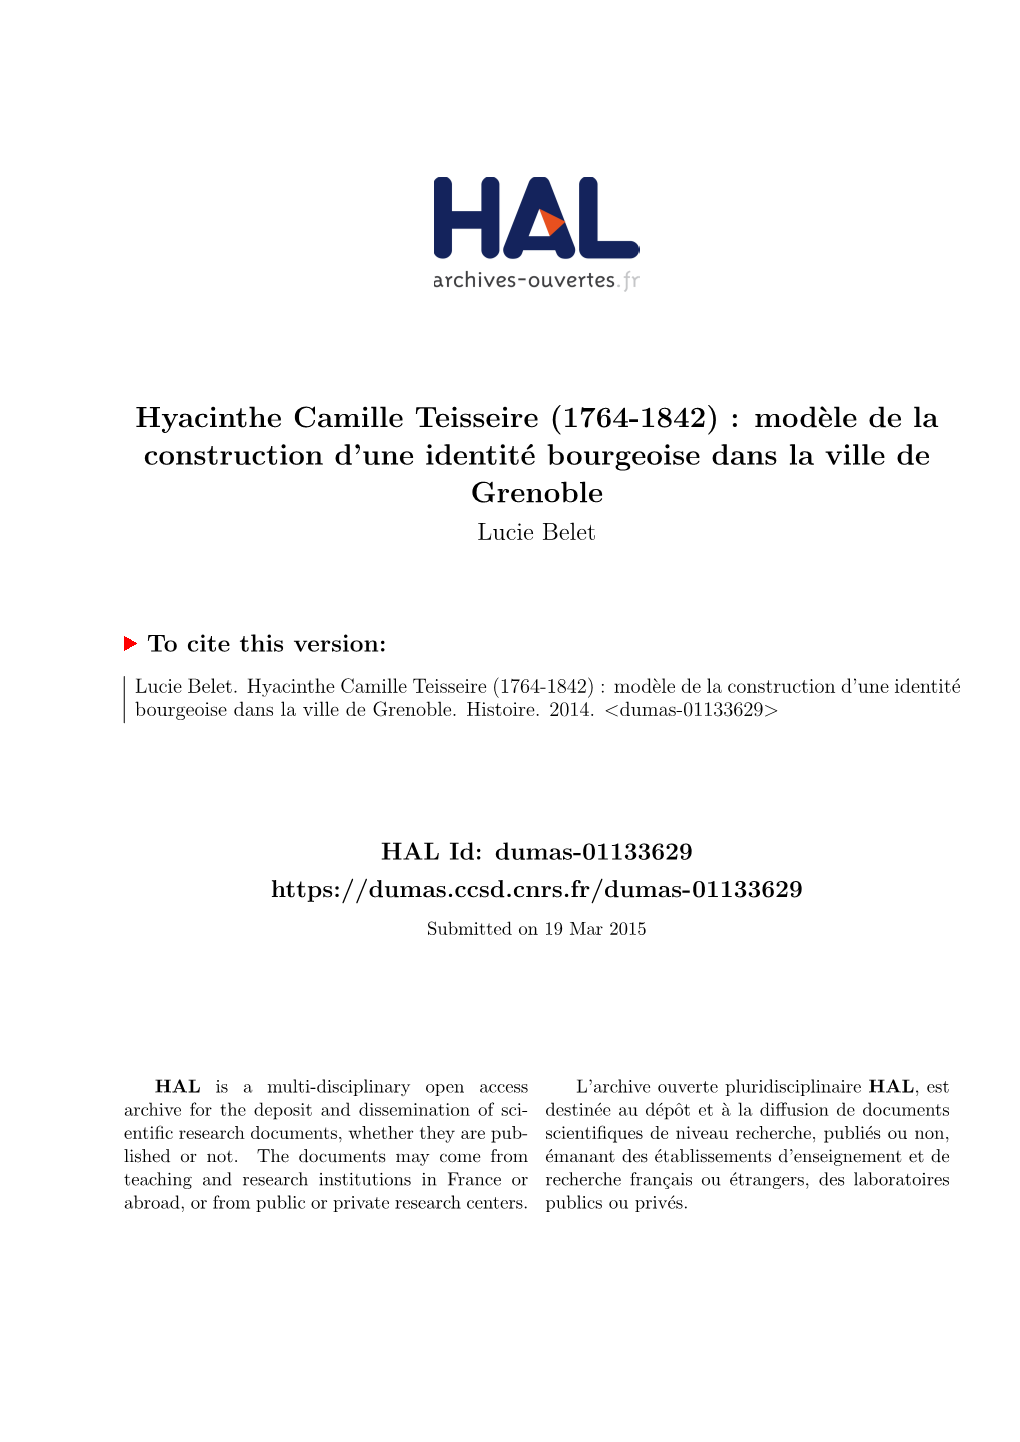 Hyacinthe Camille Teisseire (1764-1842) : Modèle De La